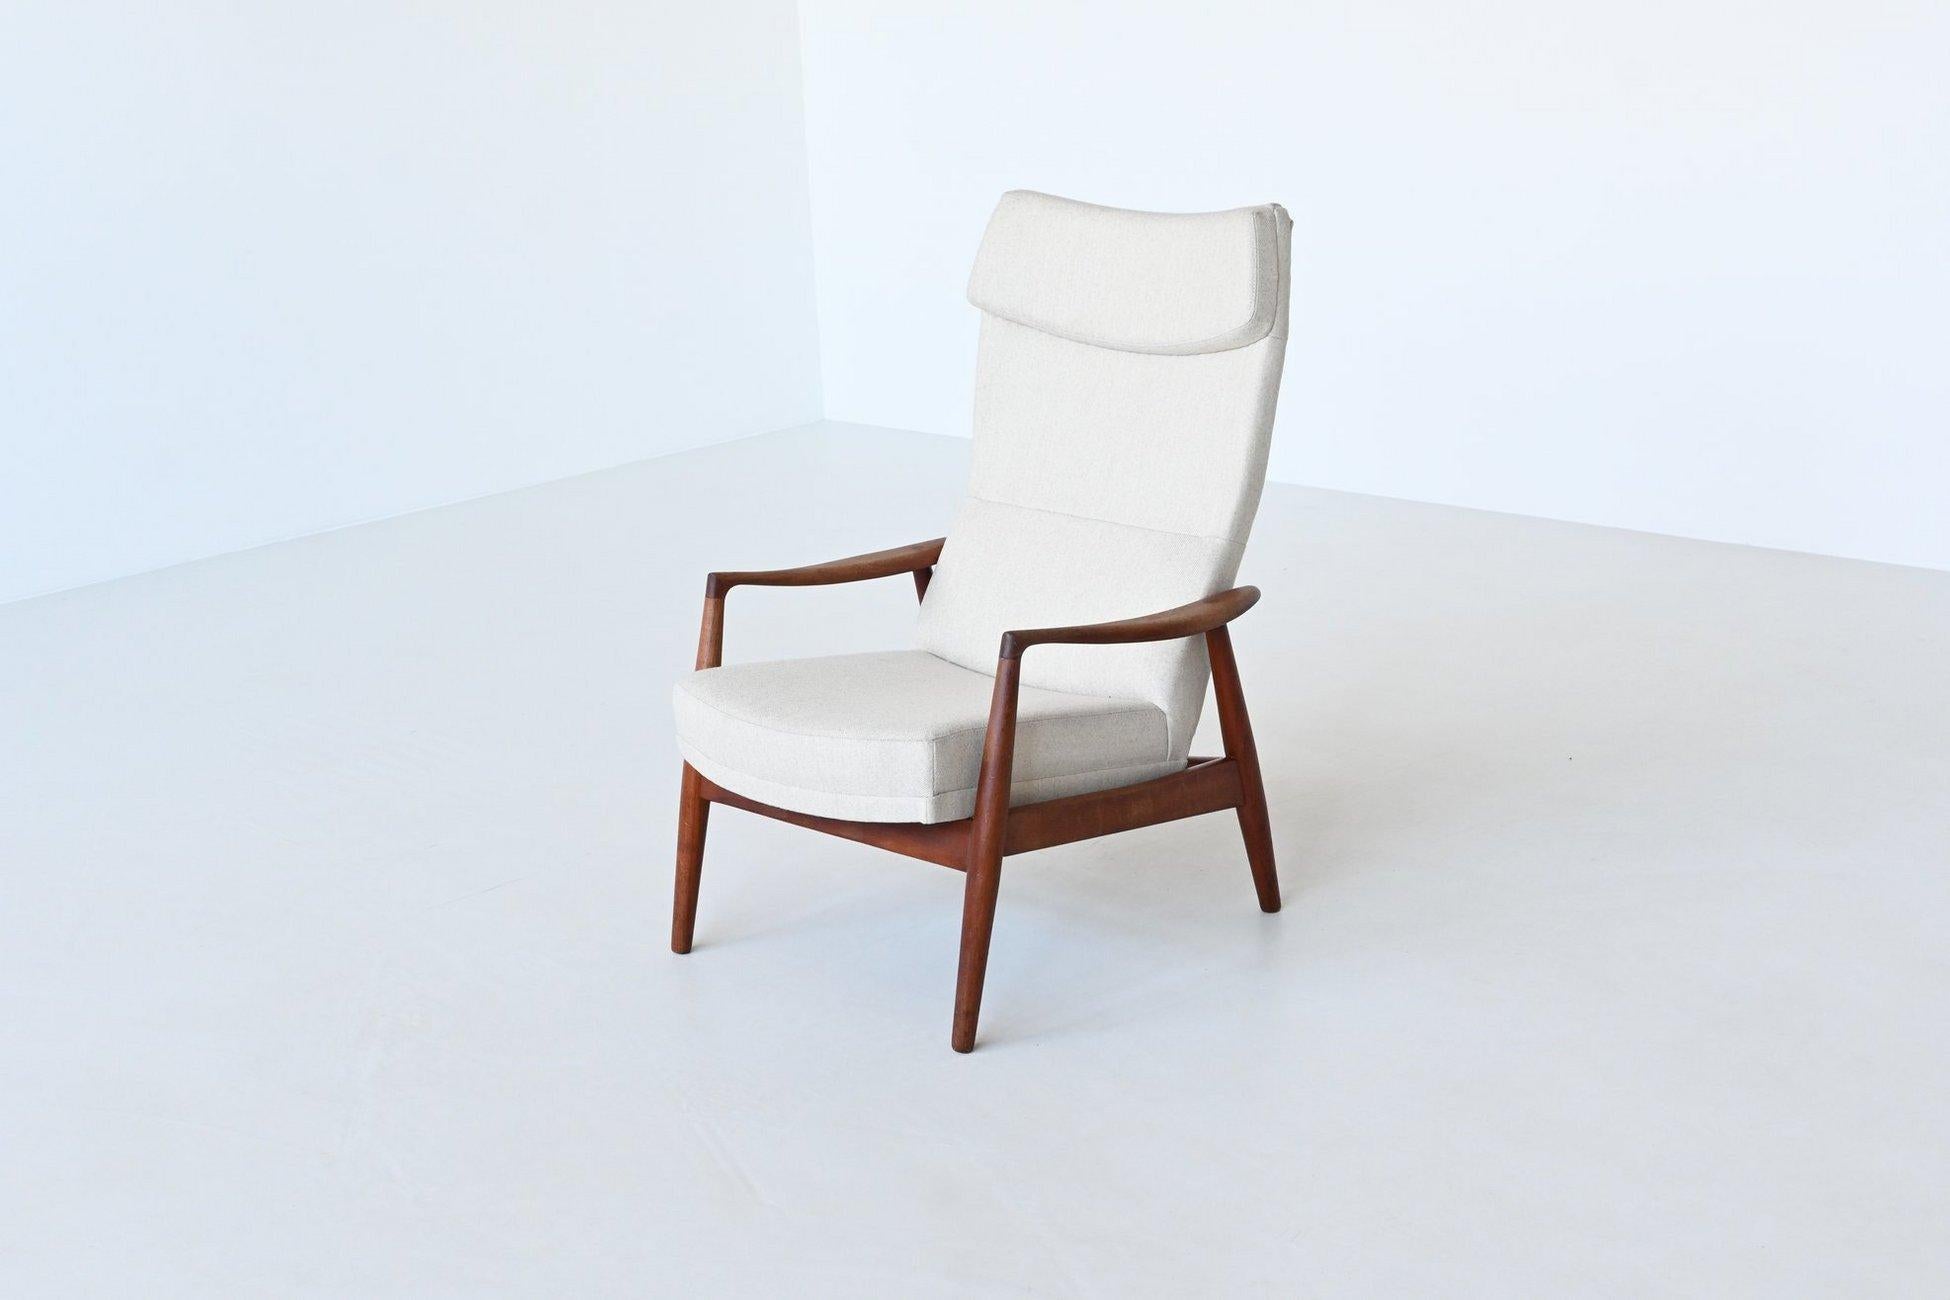 Magnifique chaise longue de forme modèle Tove conçue par les designers danois Arnold Madsen & Henry Schubell et fabriquée par Bovenkamp, Pays-Bas 1960. Arnold Madsen a travaillé pour Bovenkamp à la fin des années 1950 et au début des années 1960. Il